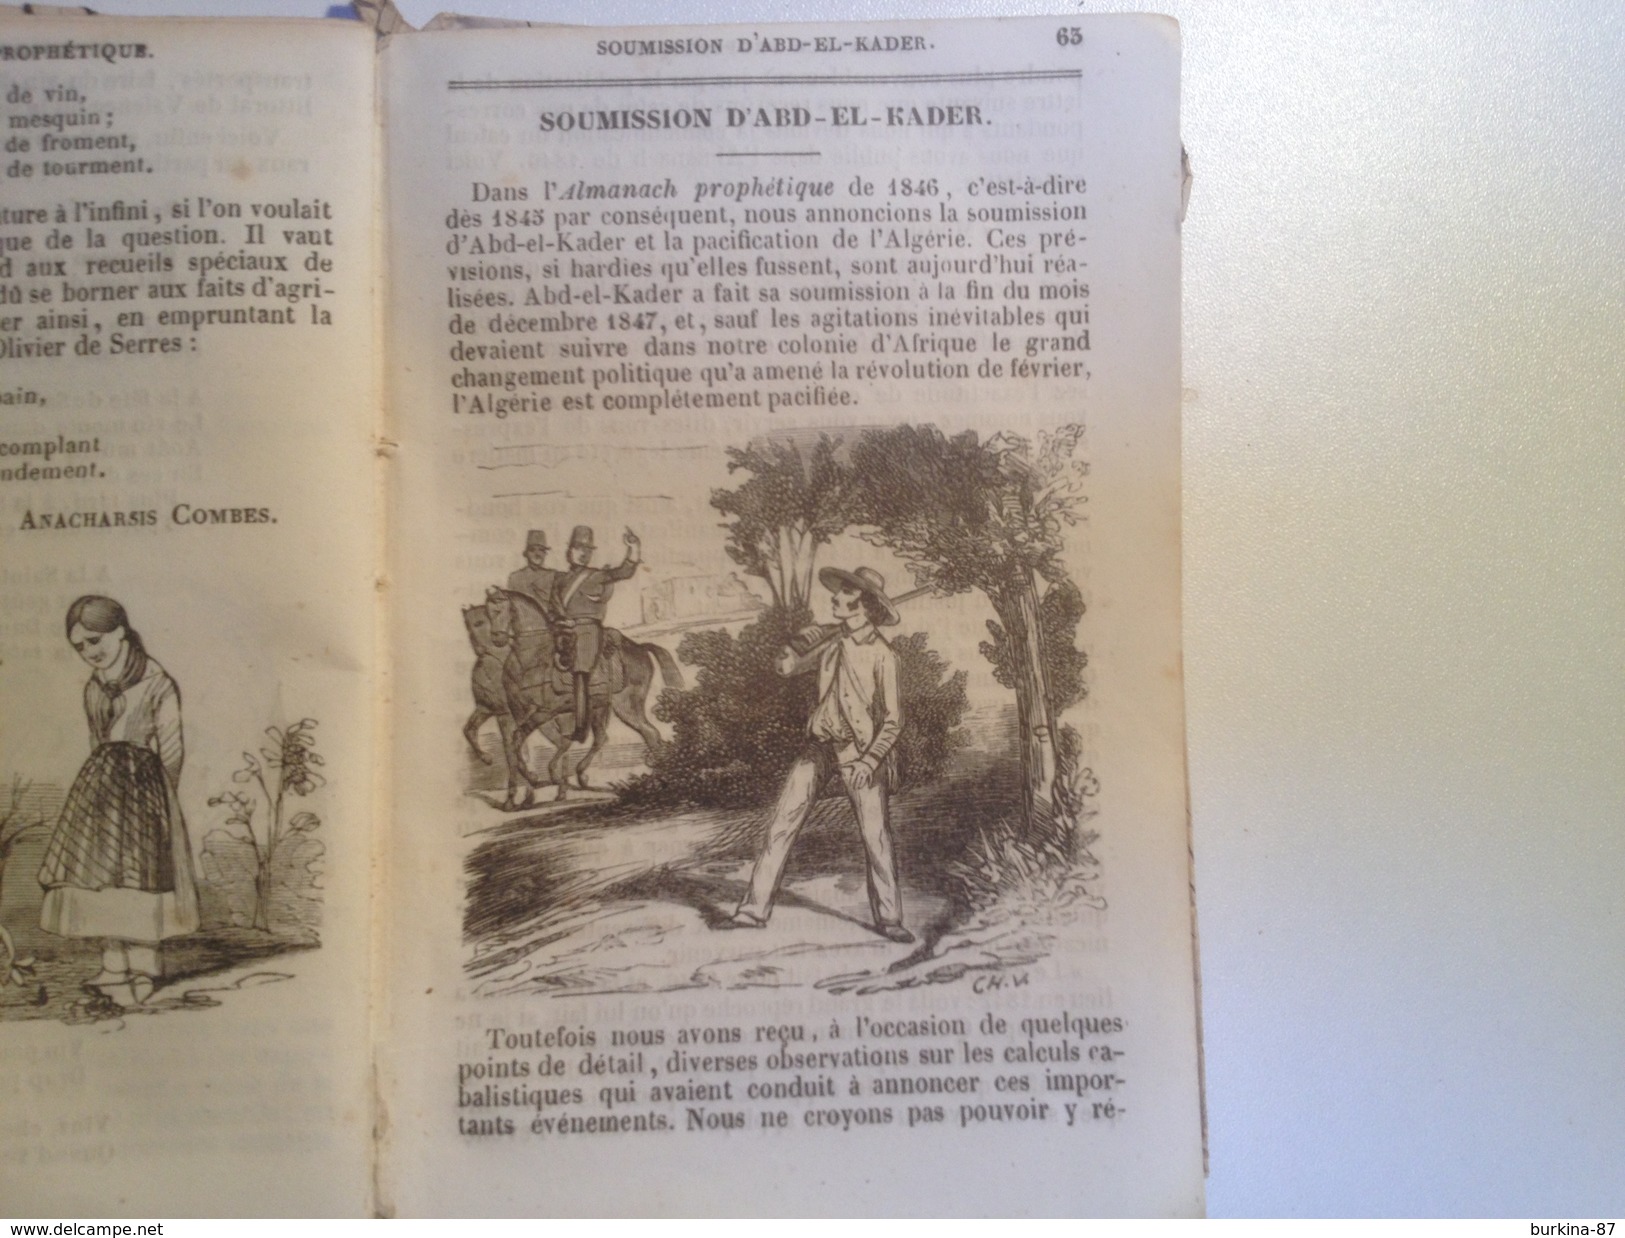 L'ALMANACH, PROPHETIQUE 1850, 88 Pages - Formato Piccolo : ...-1900